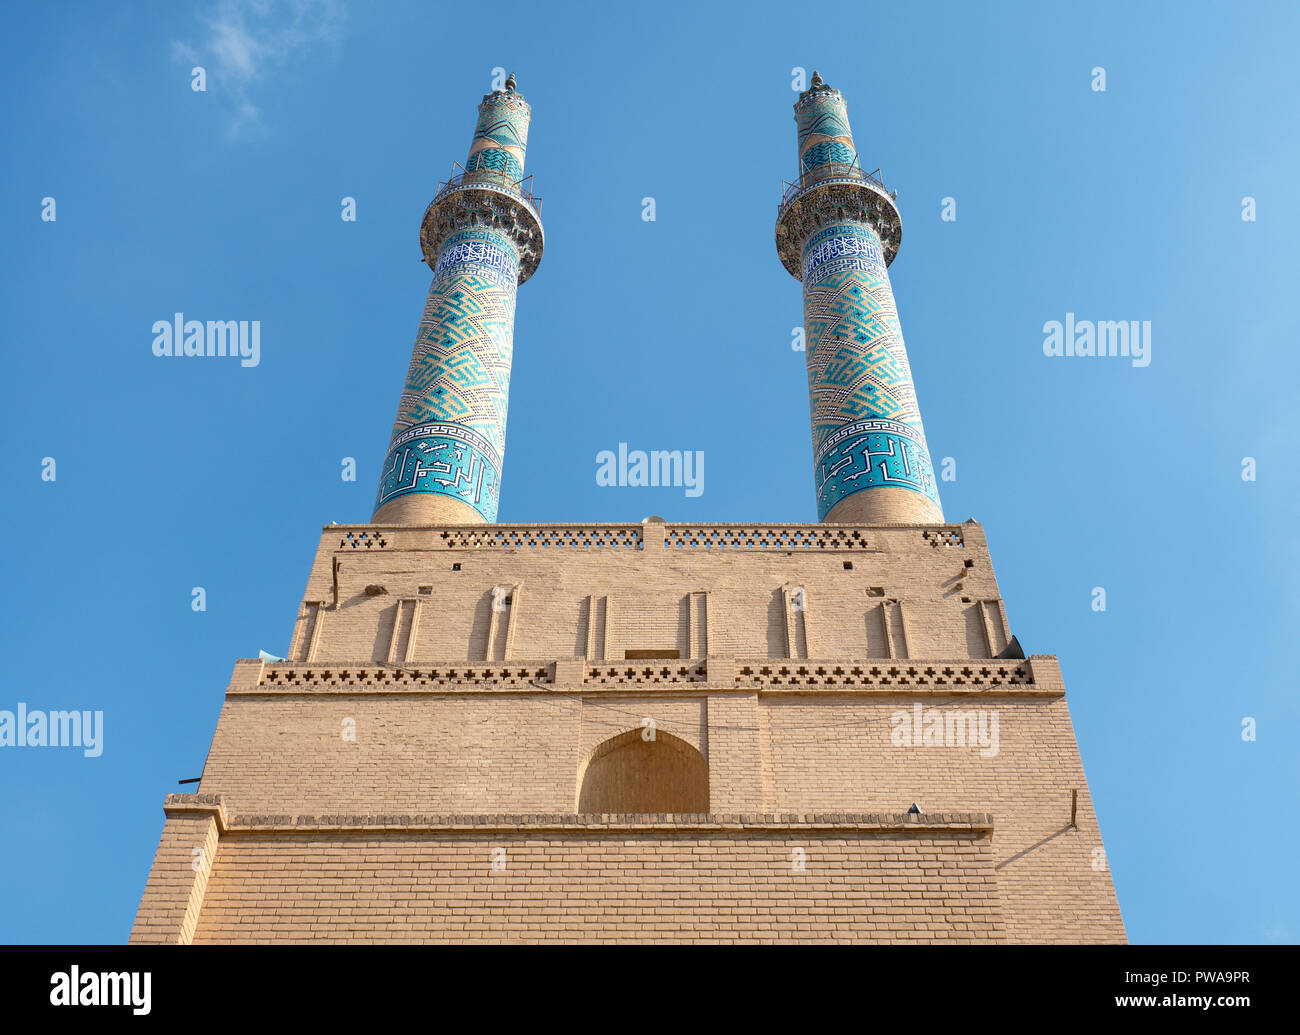 Les minarets de la mosquée Jameh de Yazd, le plus haut de l'Iran Banque D'Images